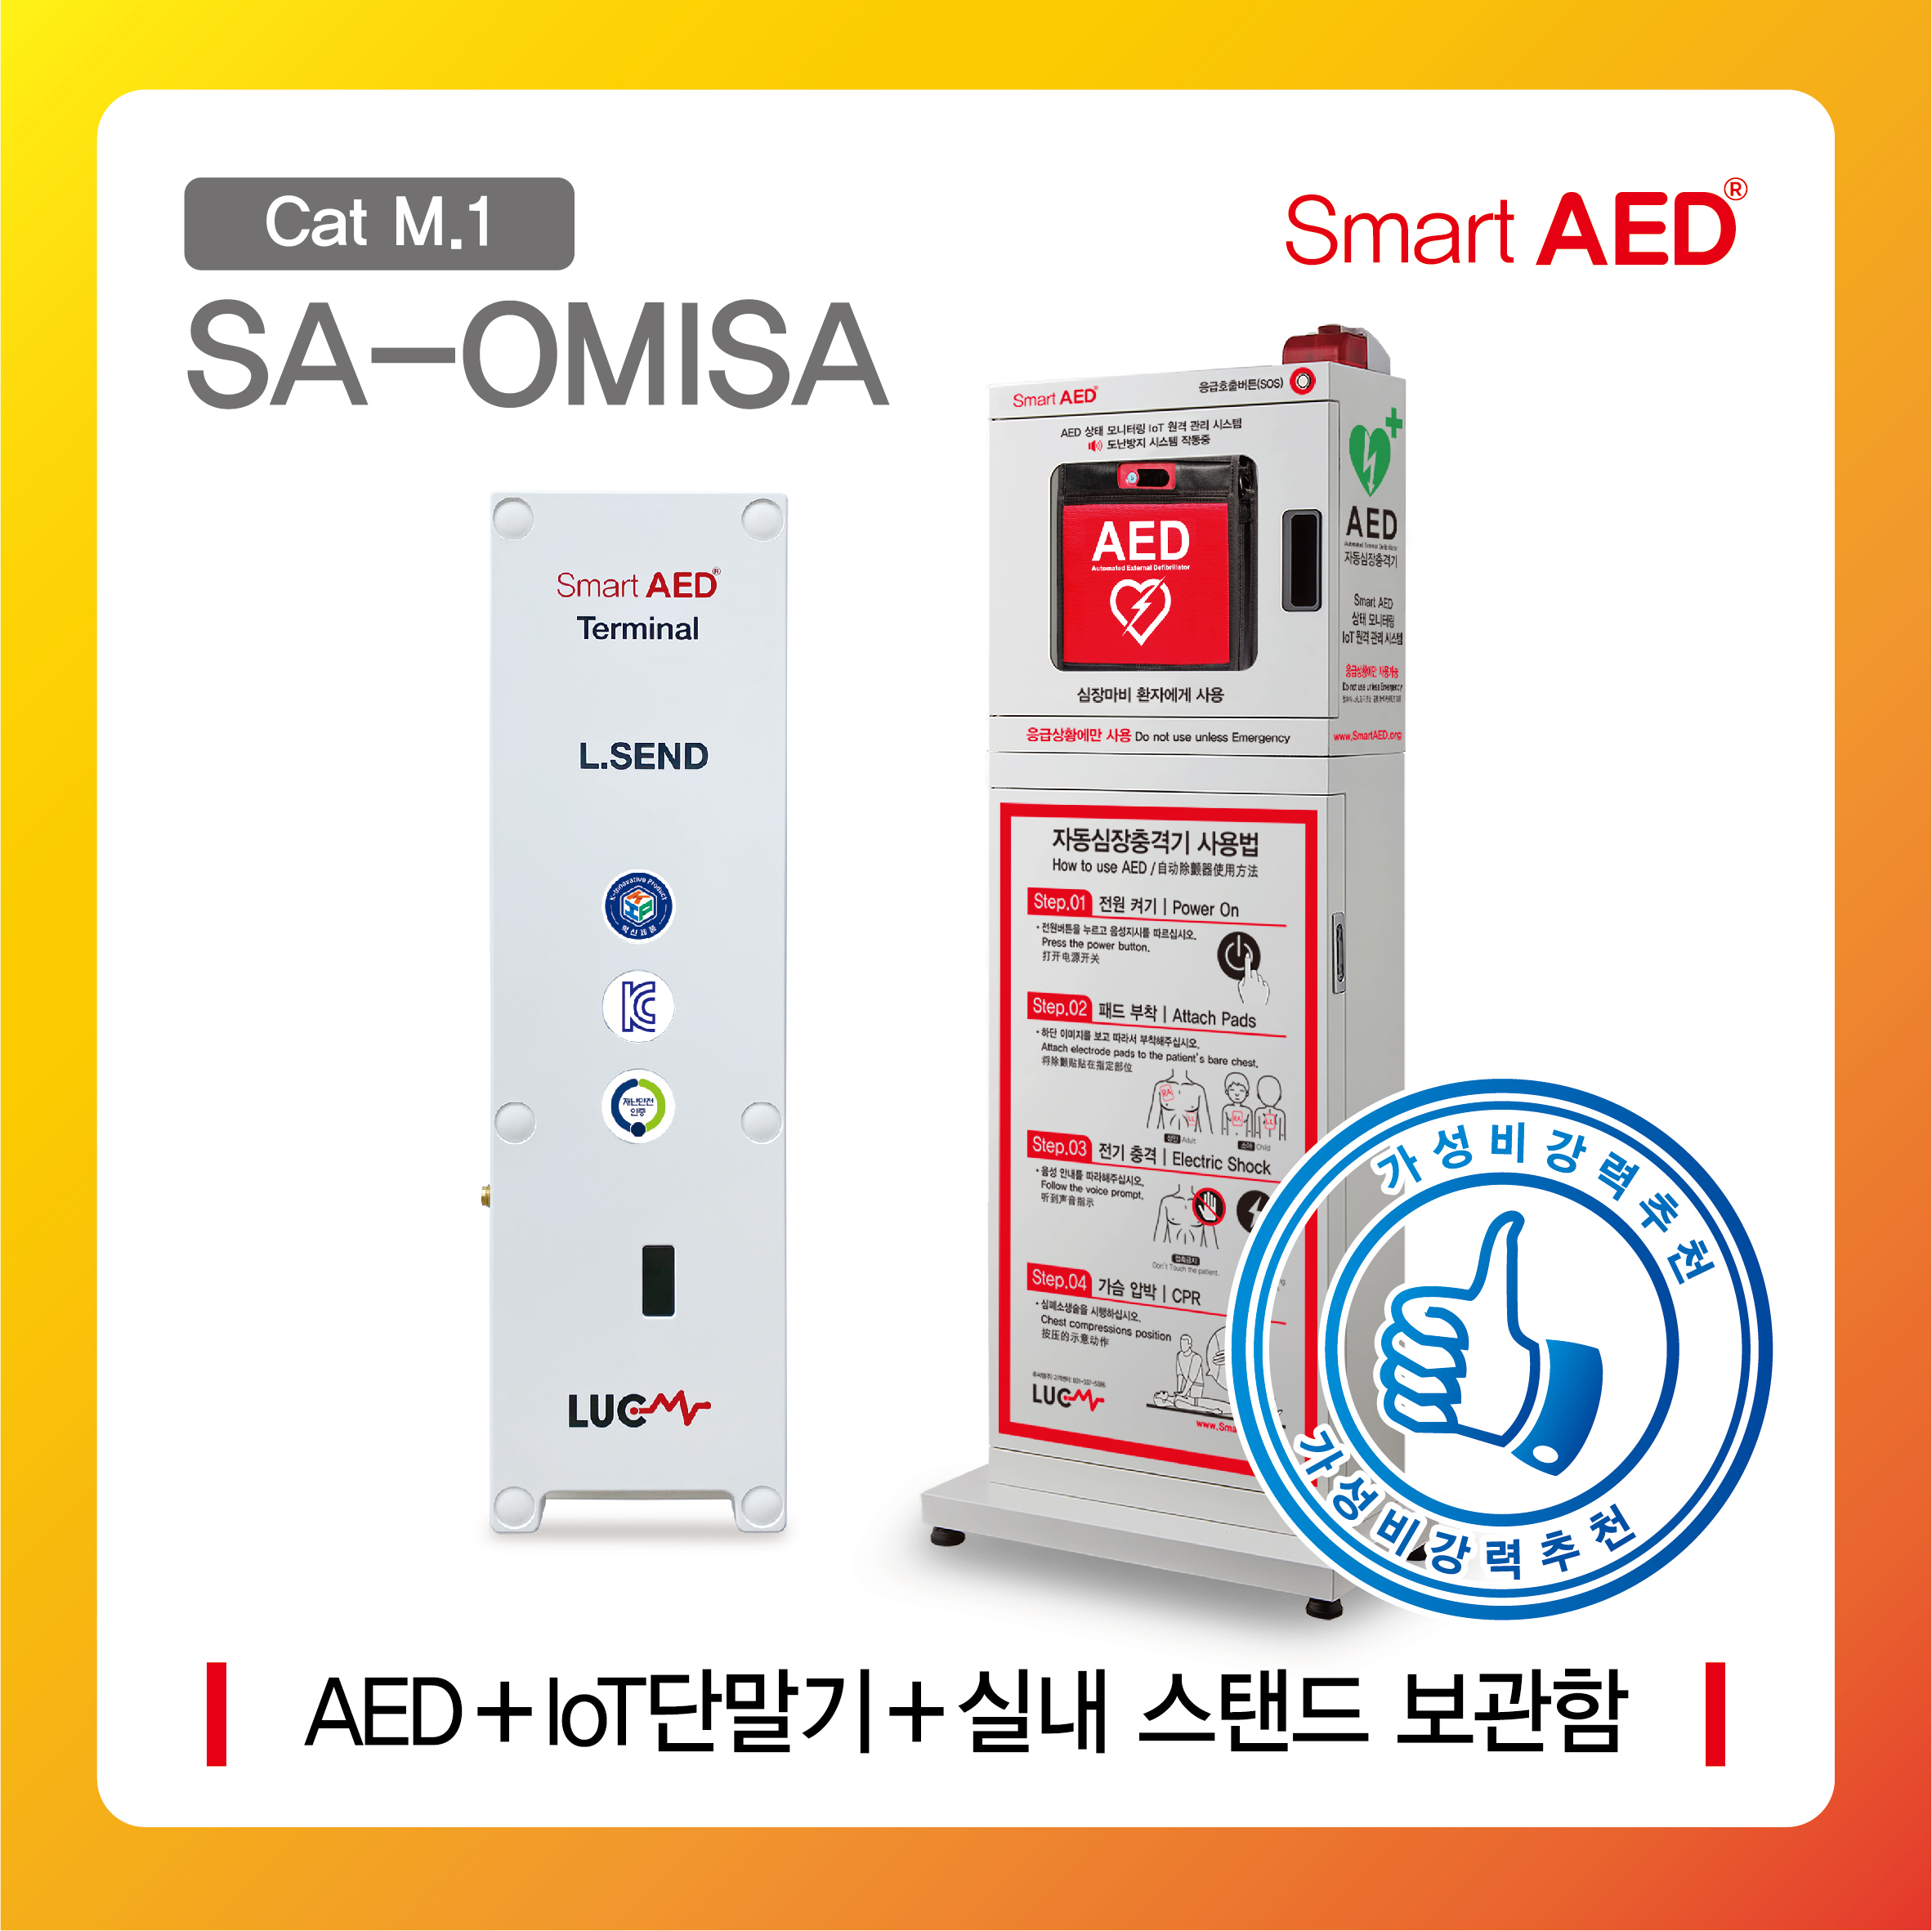 [ SA-OMISA ] 스마트 AED 통합모니터링 장치 및 실내 스탠드보관함(AED포함)